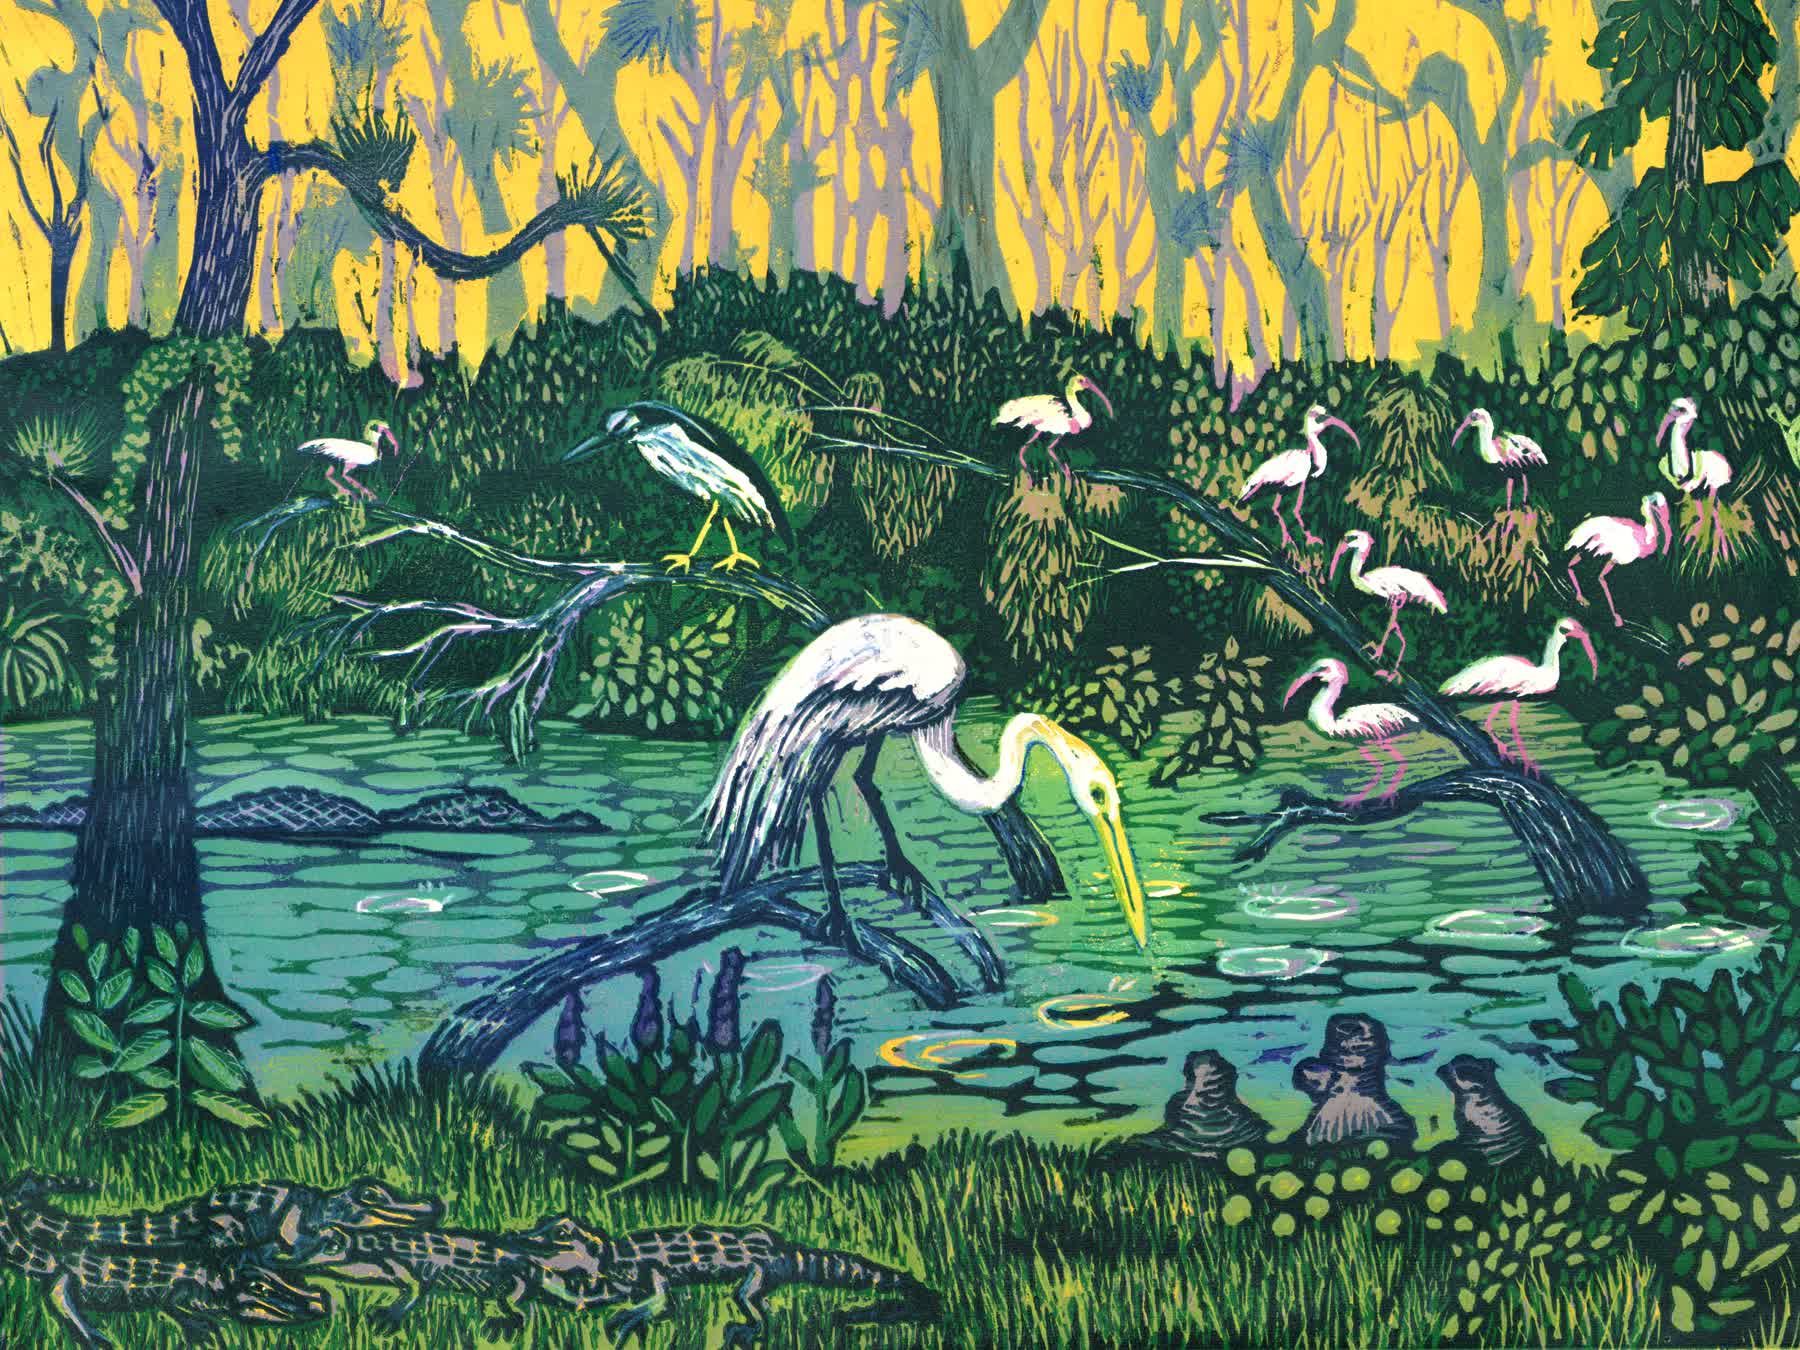 'Loose Screw Pond', by Leslie Peebles